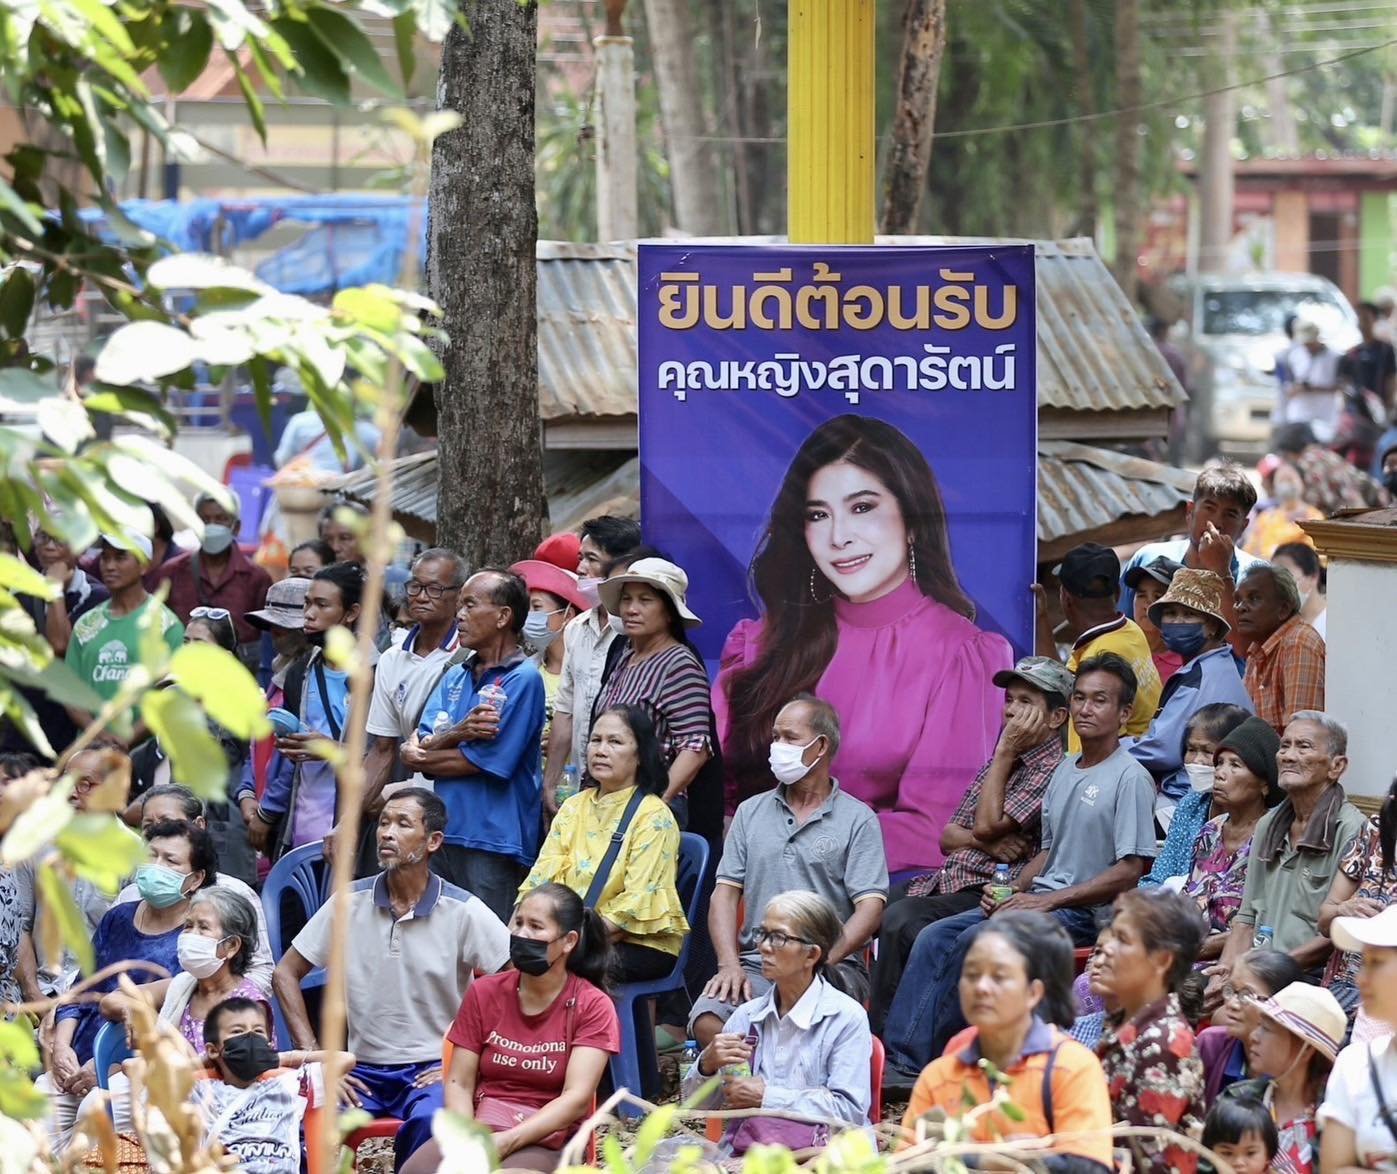 คนอุบลฯ กว่าสองหมื่นคน แห่ฟังเวที "ไทยสร้างไทย อีสานมั่งคั่ง" เพราะ “นายใหญ่ของเราคือประชาชน”